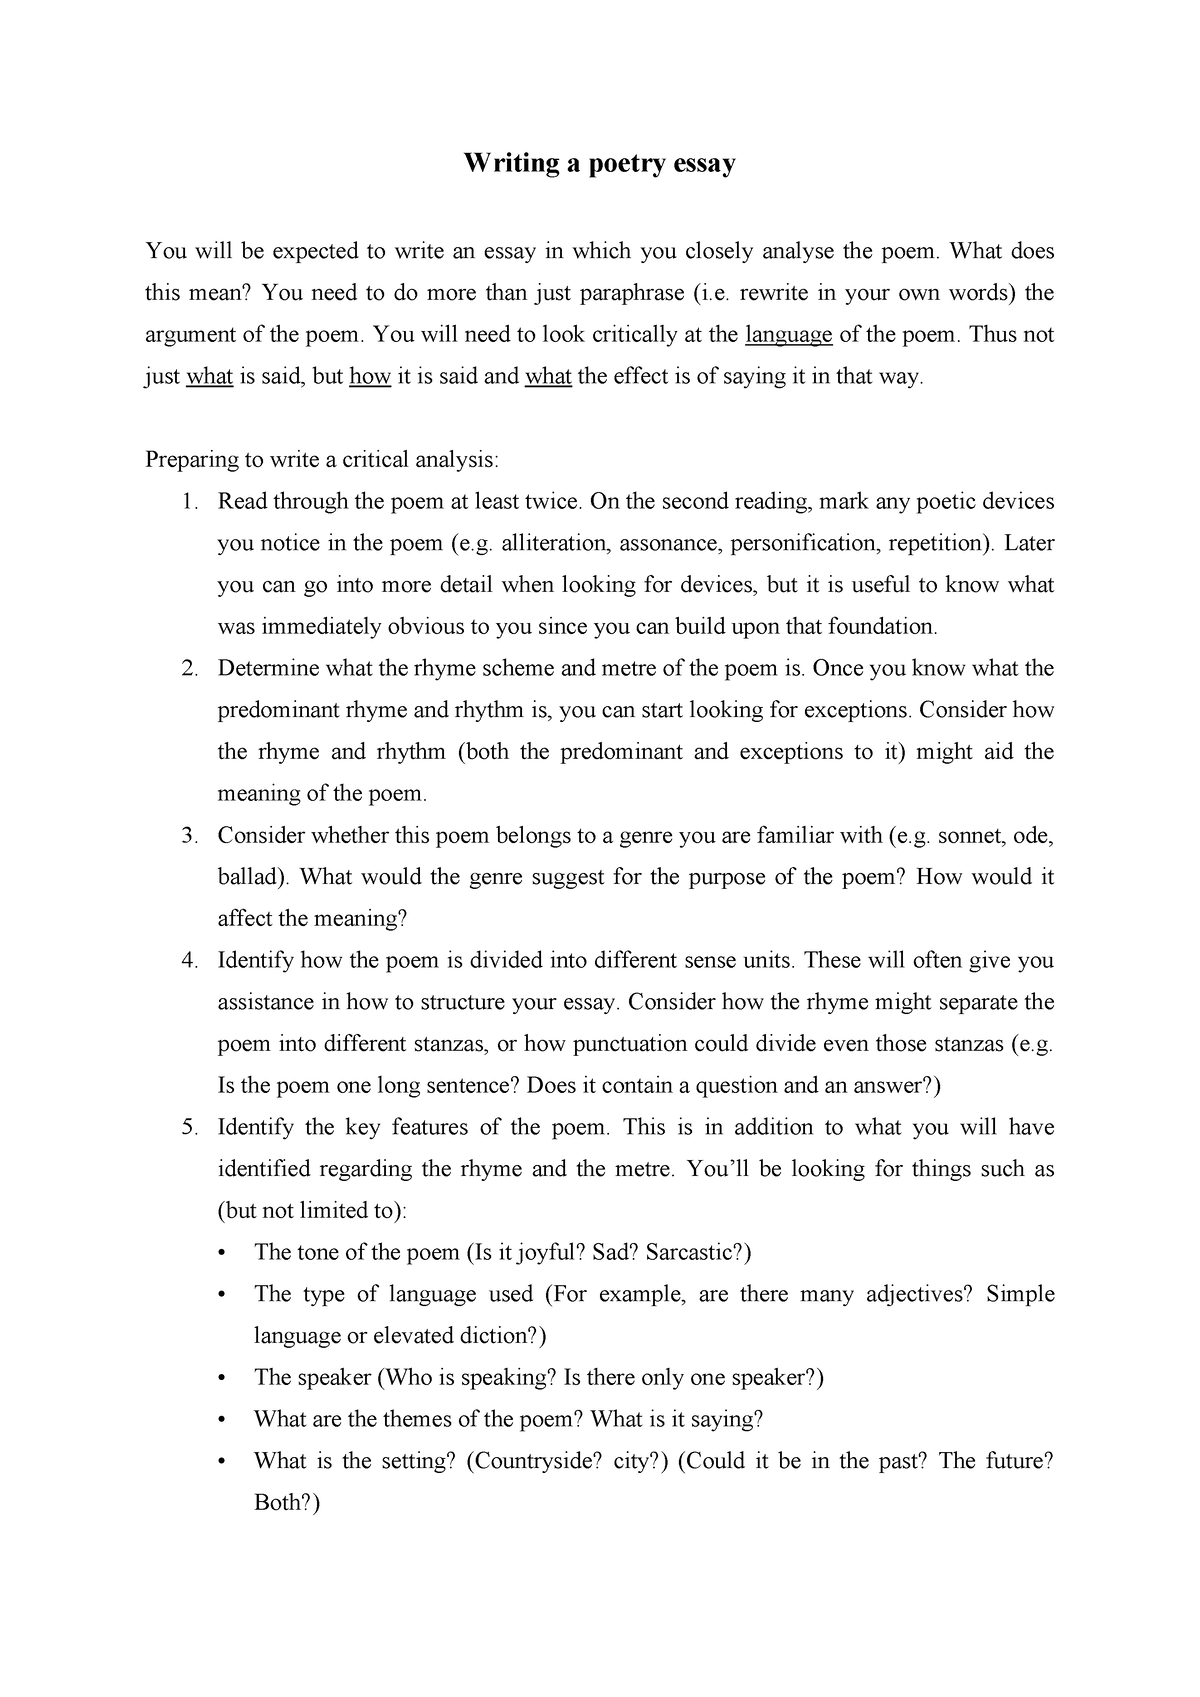 how to write a poetry essay grade 12 pdf